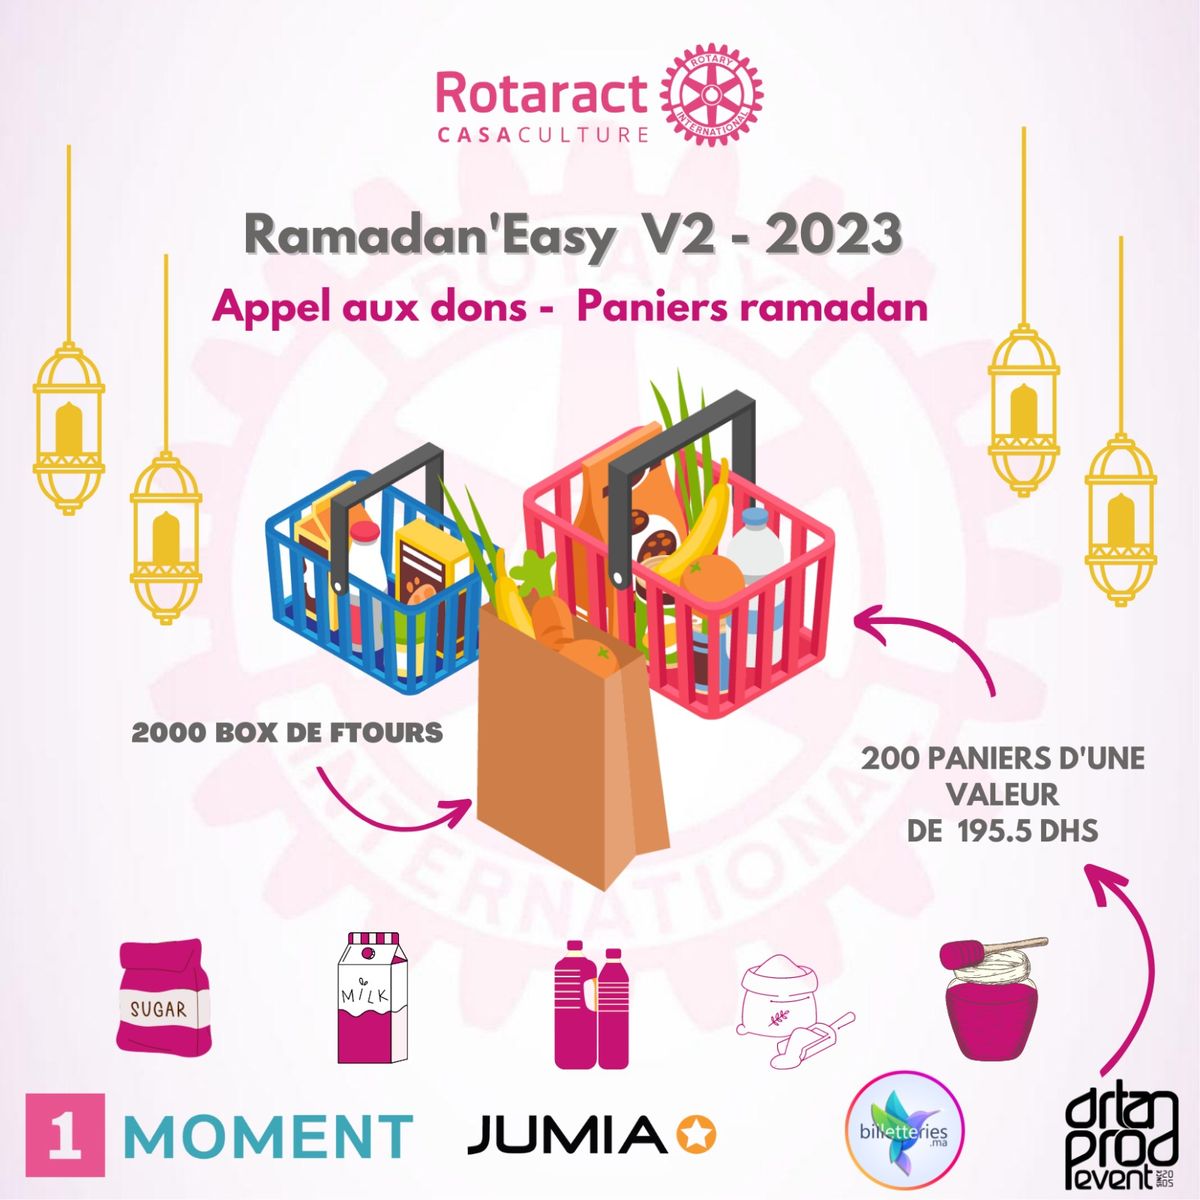 Ramadan'Easy V2